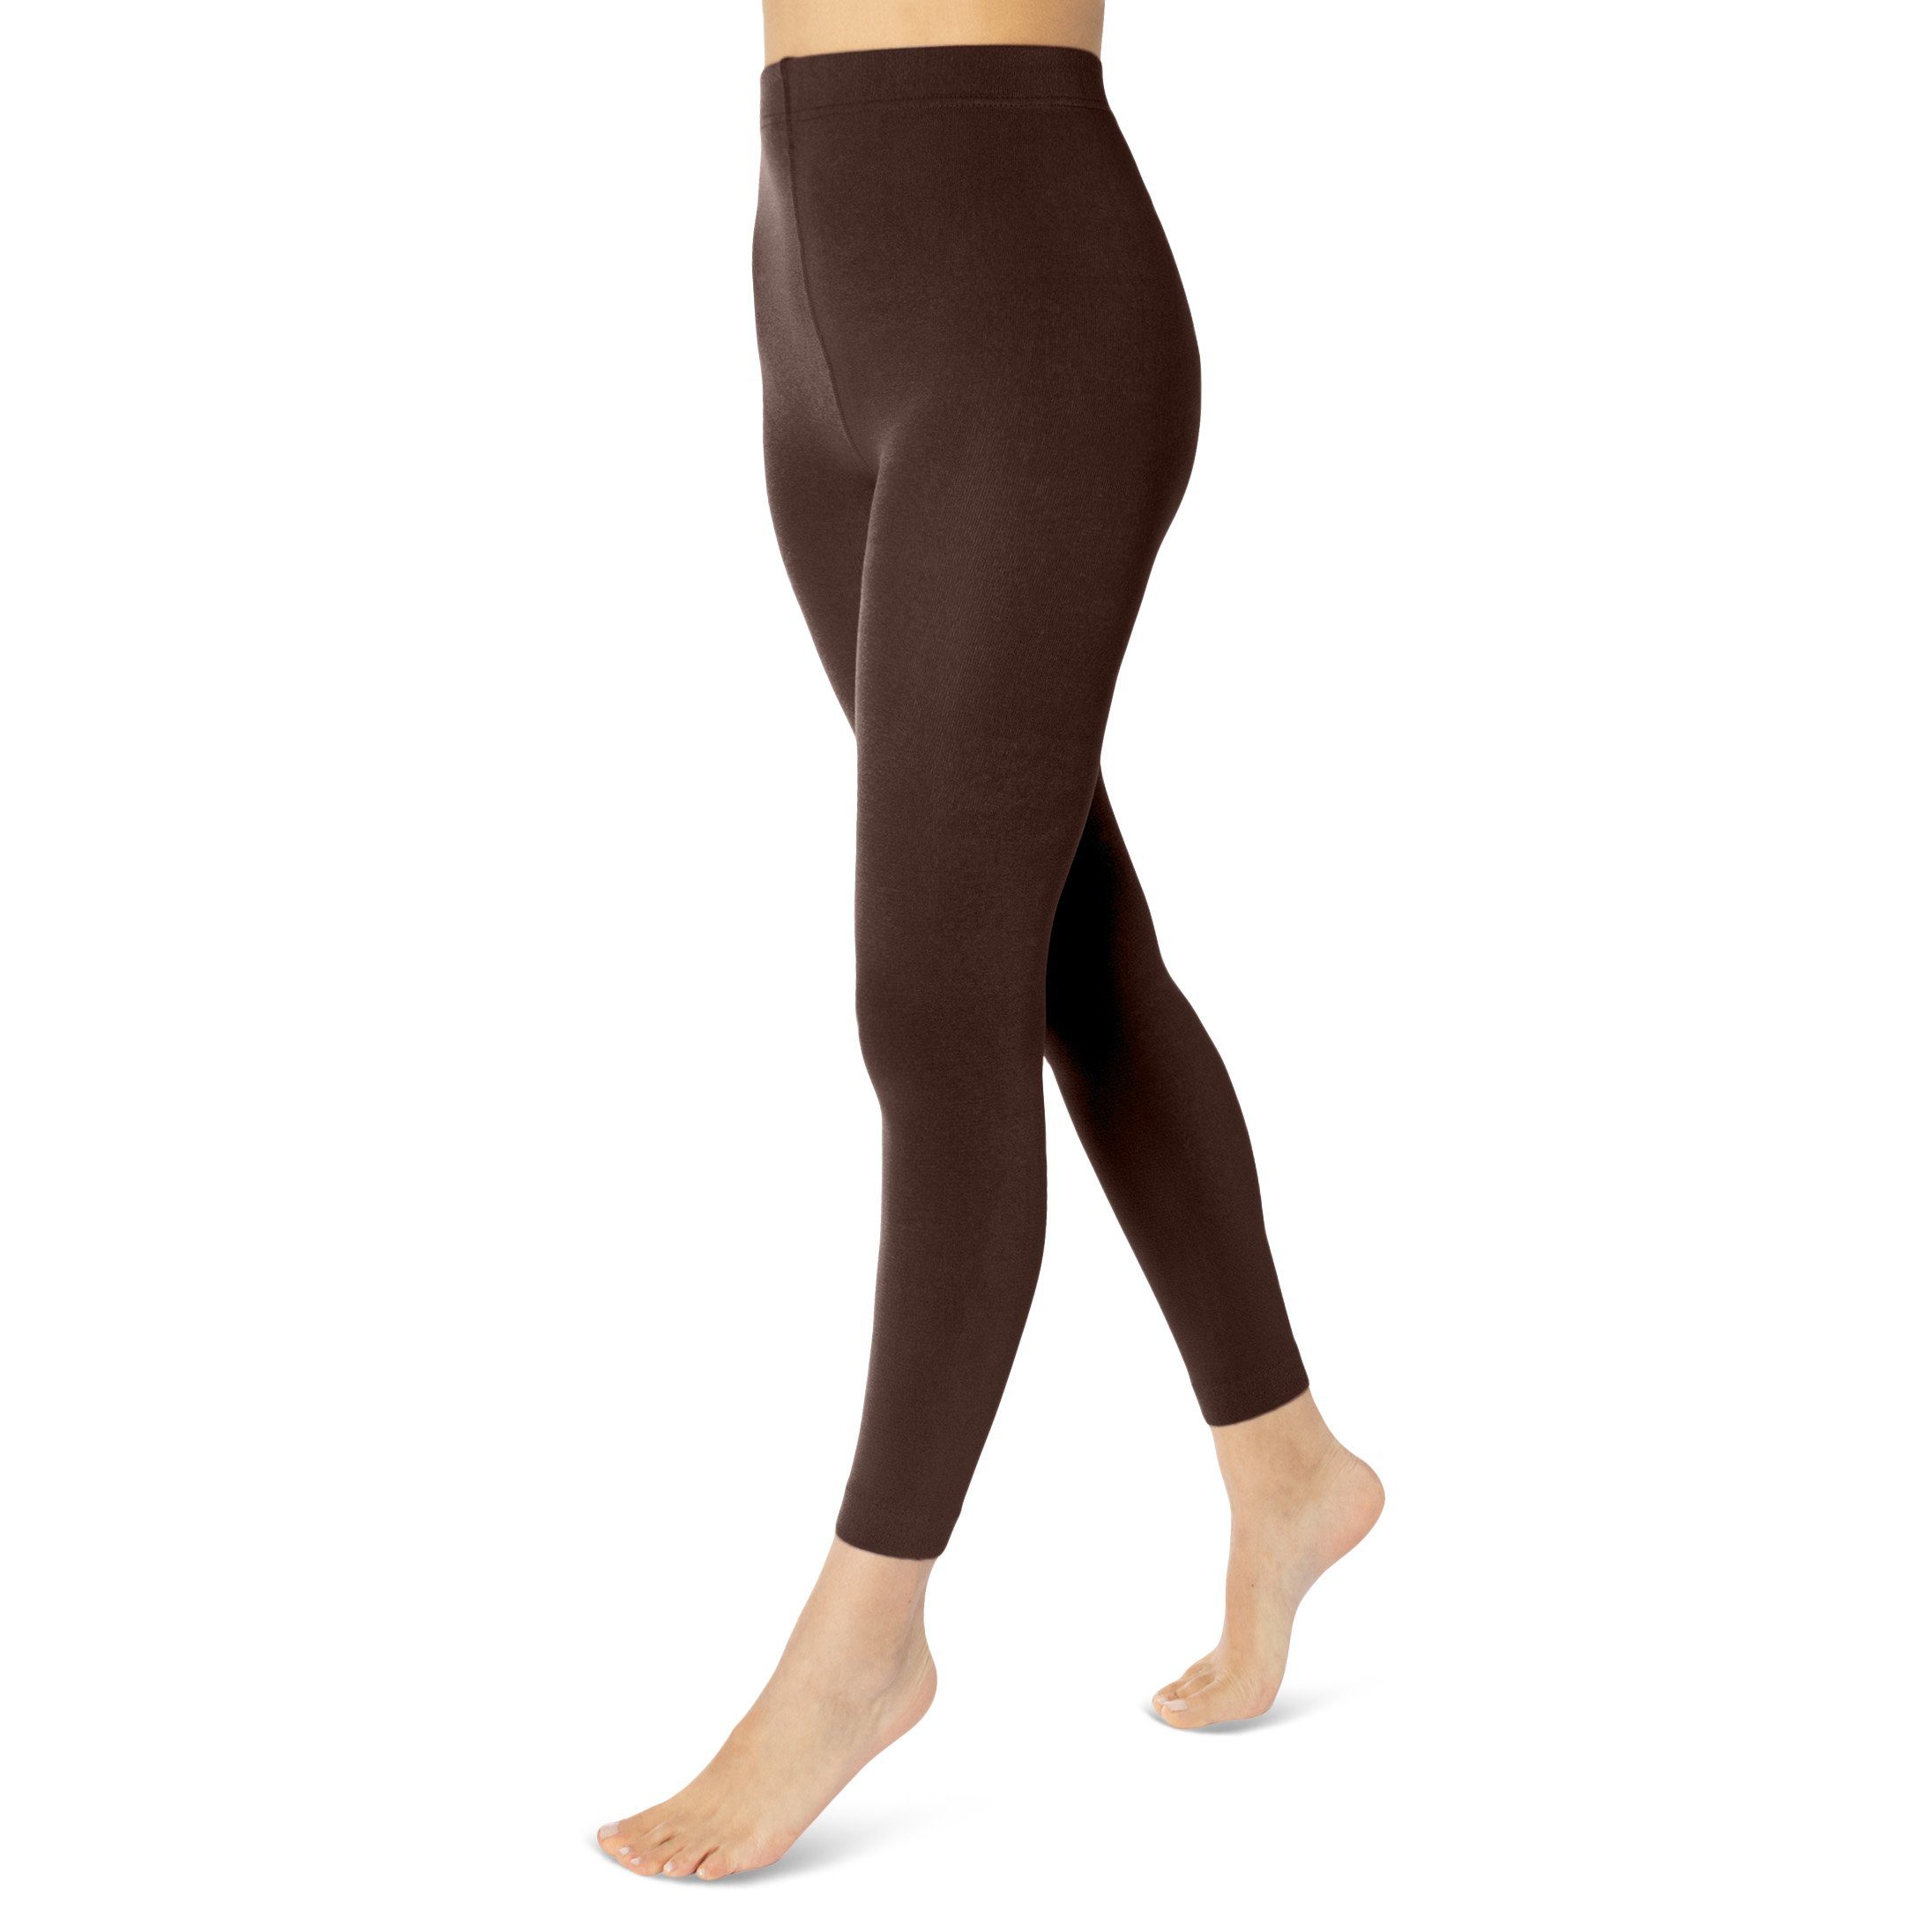 Braune Leggings für Damen online kaufen | OTTO